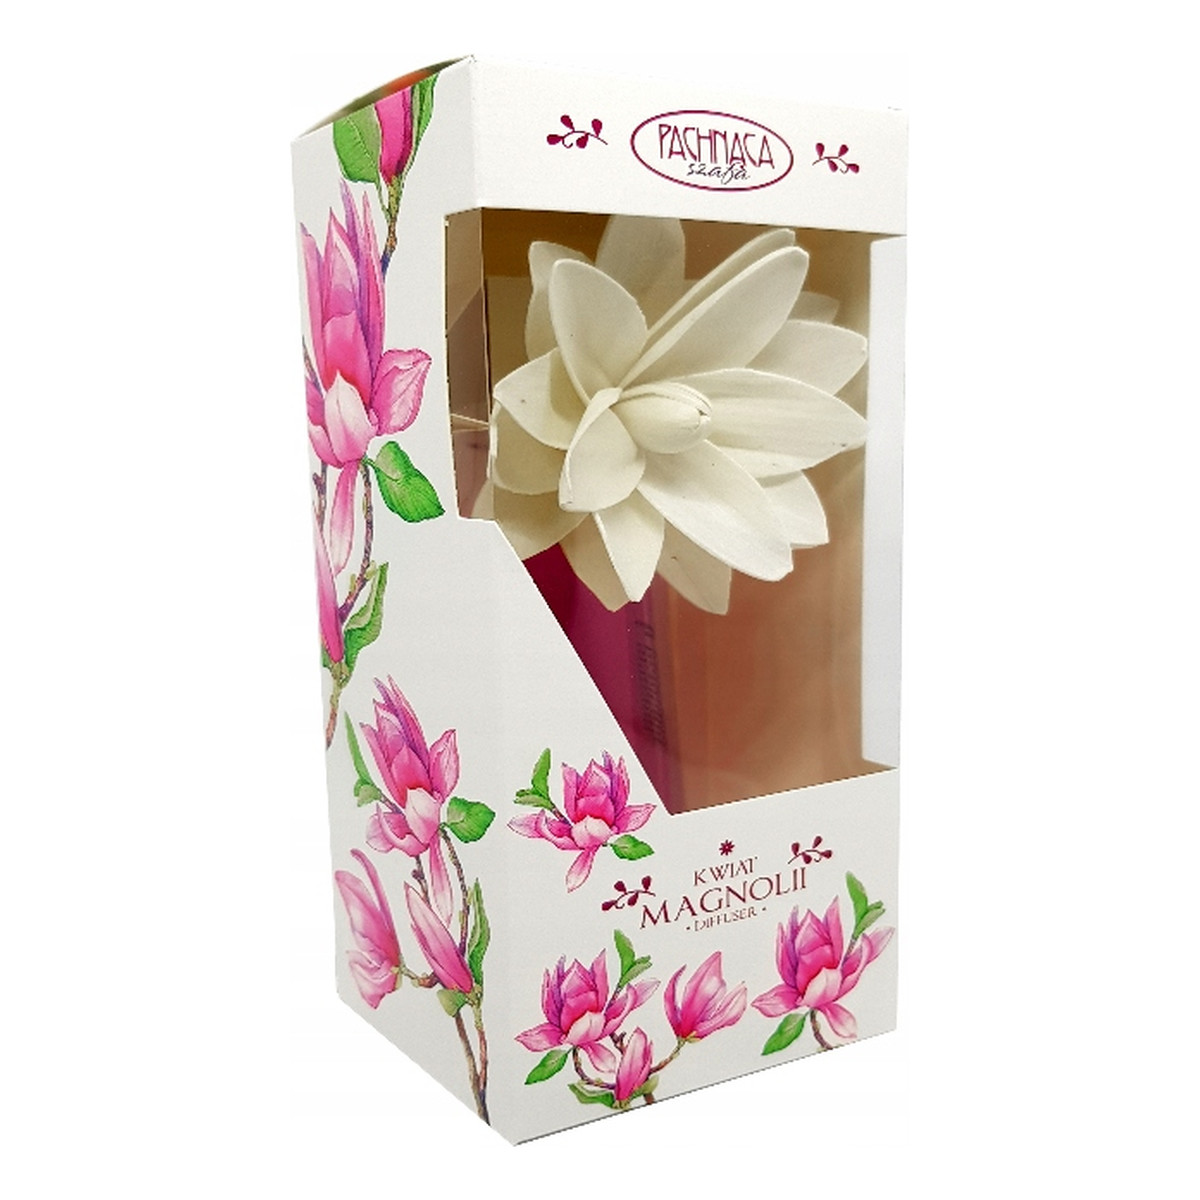 Pachnąca Szafa Dekoracyjny odświeżacz powietrza Kwiat Magnolii 90ml